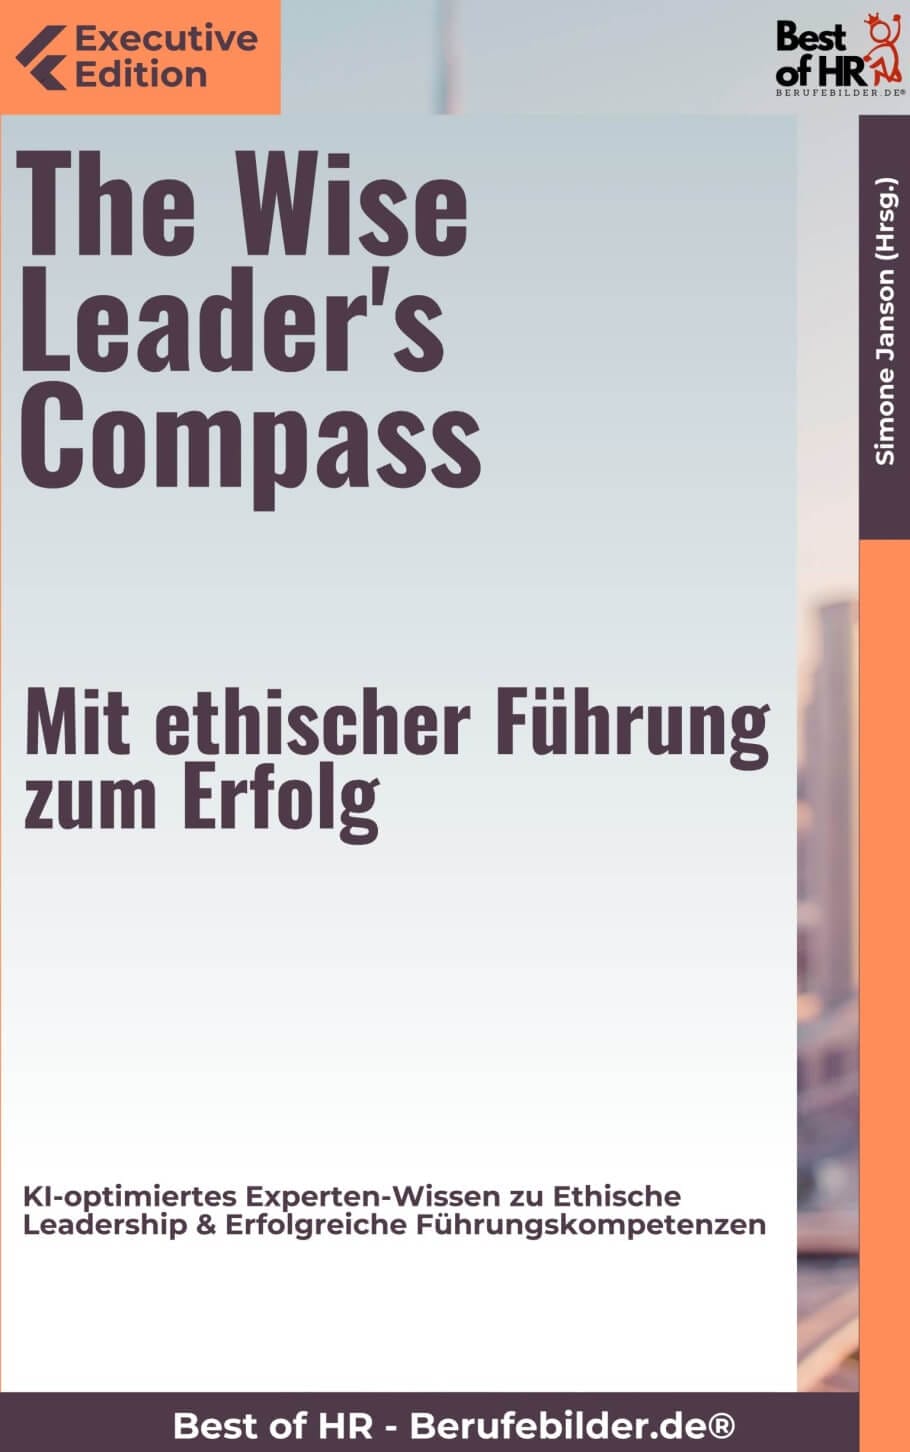 The Wise Leader’s Compass – Mit ethischer Führung zum Erfolg